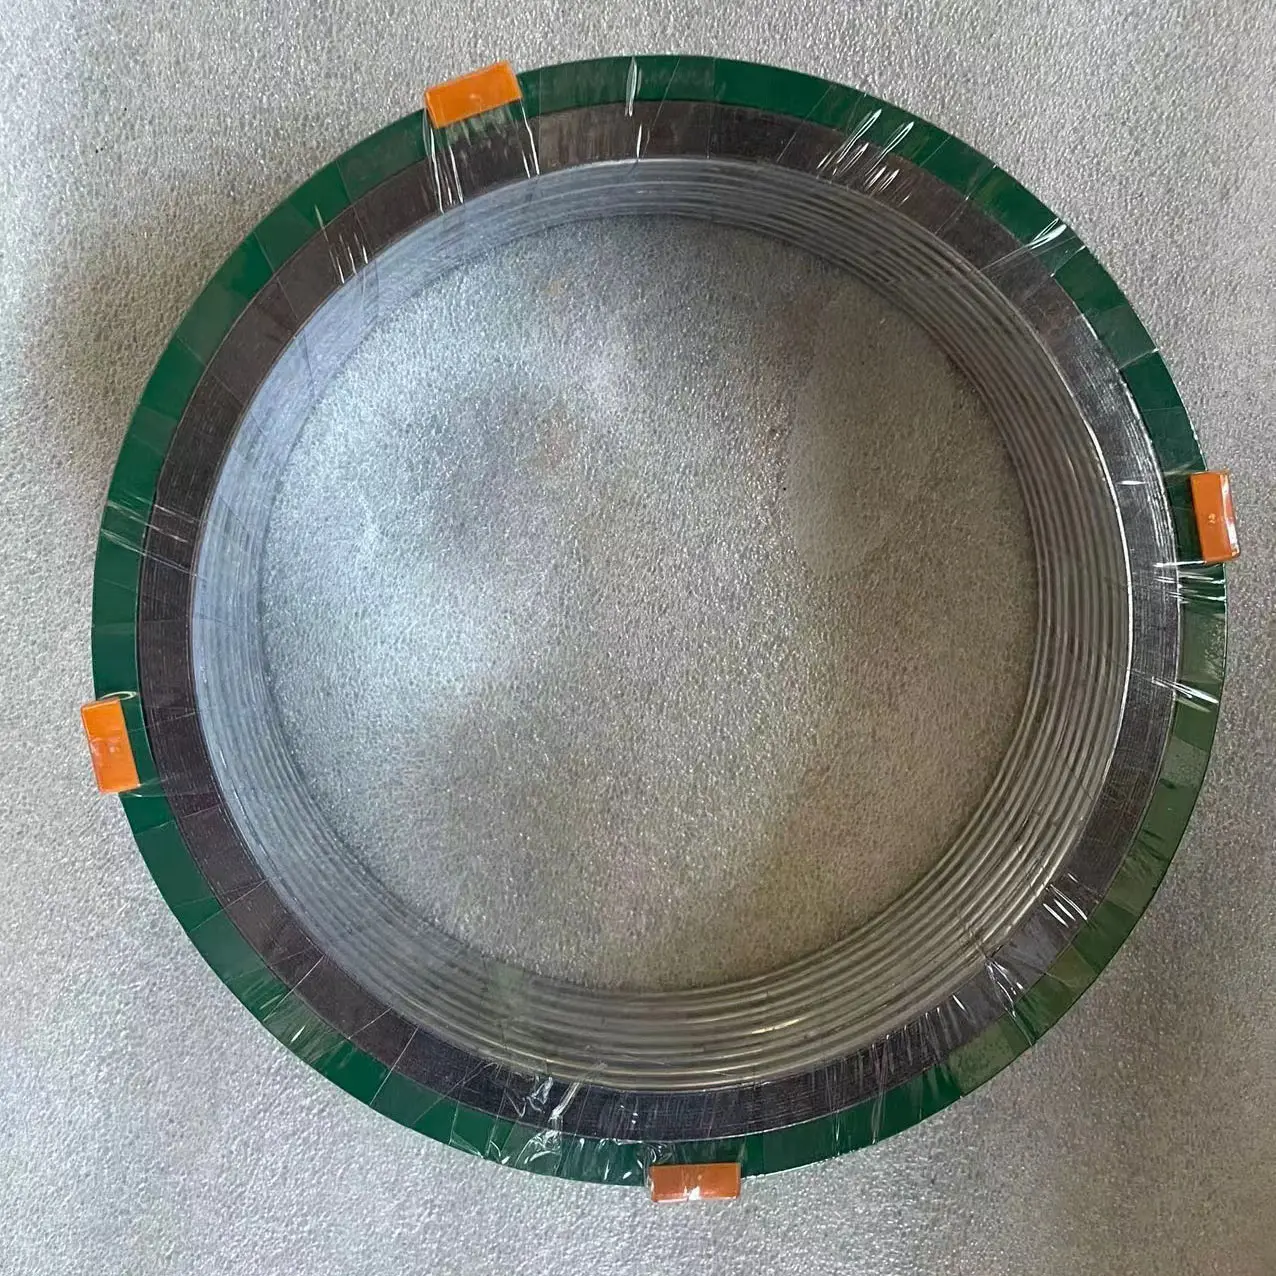 Spiral-wound gasket DN50 PN100 C/I 1.4404+F.G EN 1514-2 Types of graphite spiral wound gasket ISO 